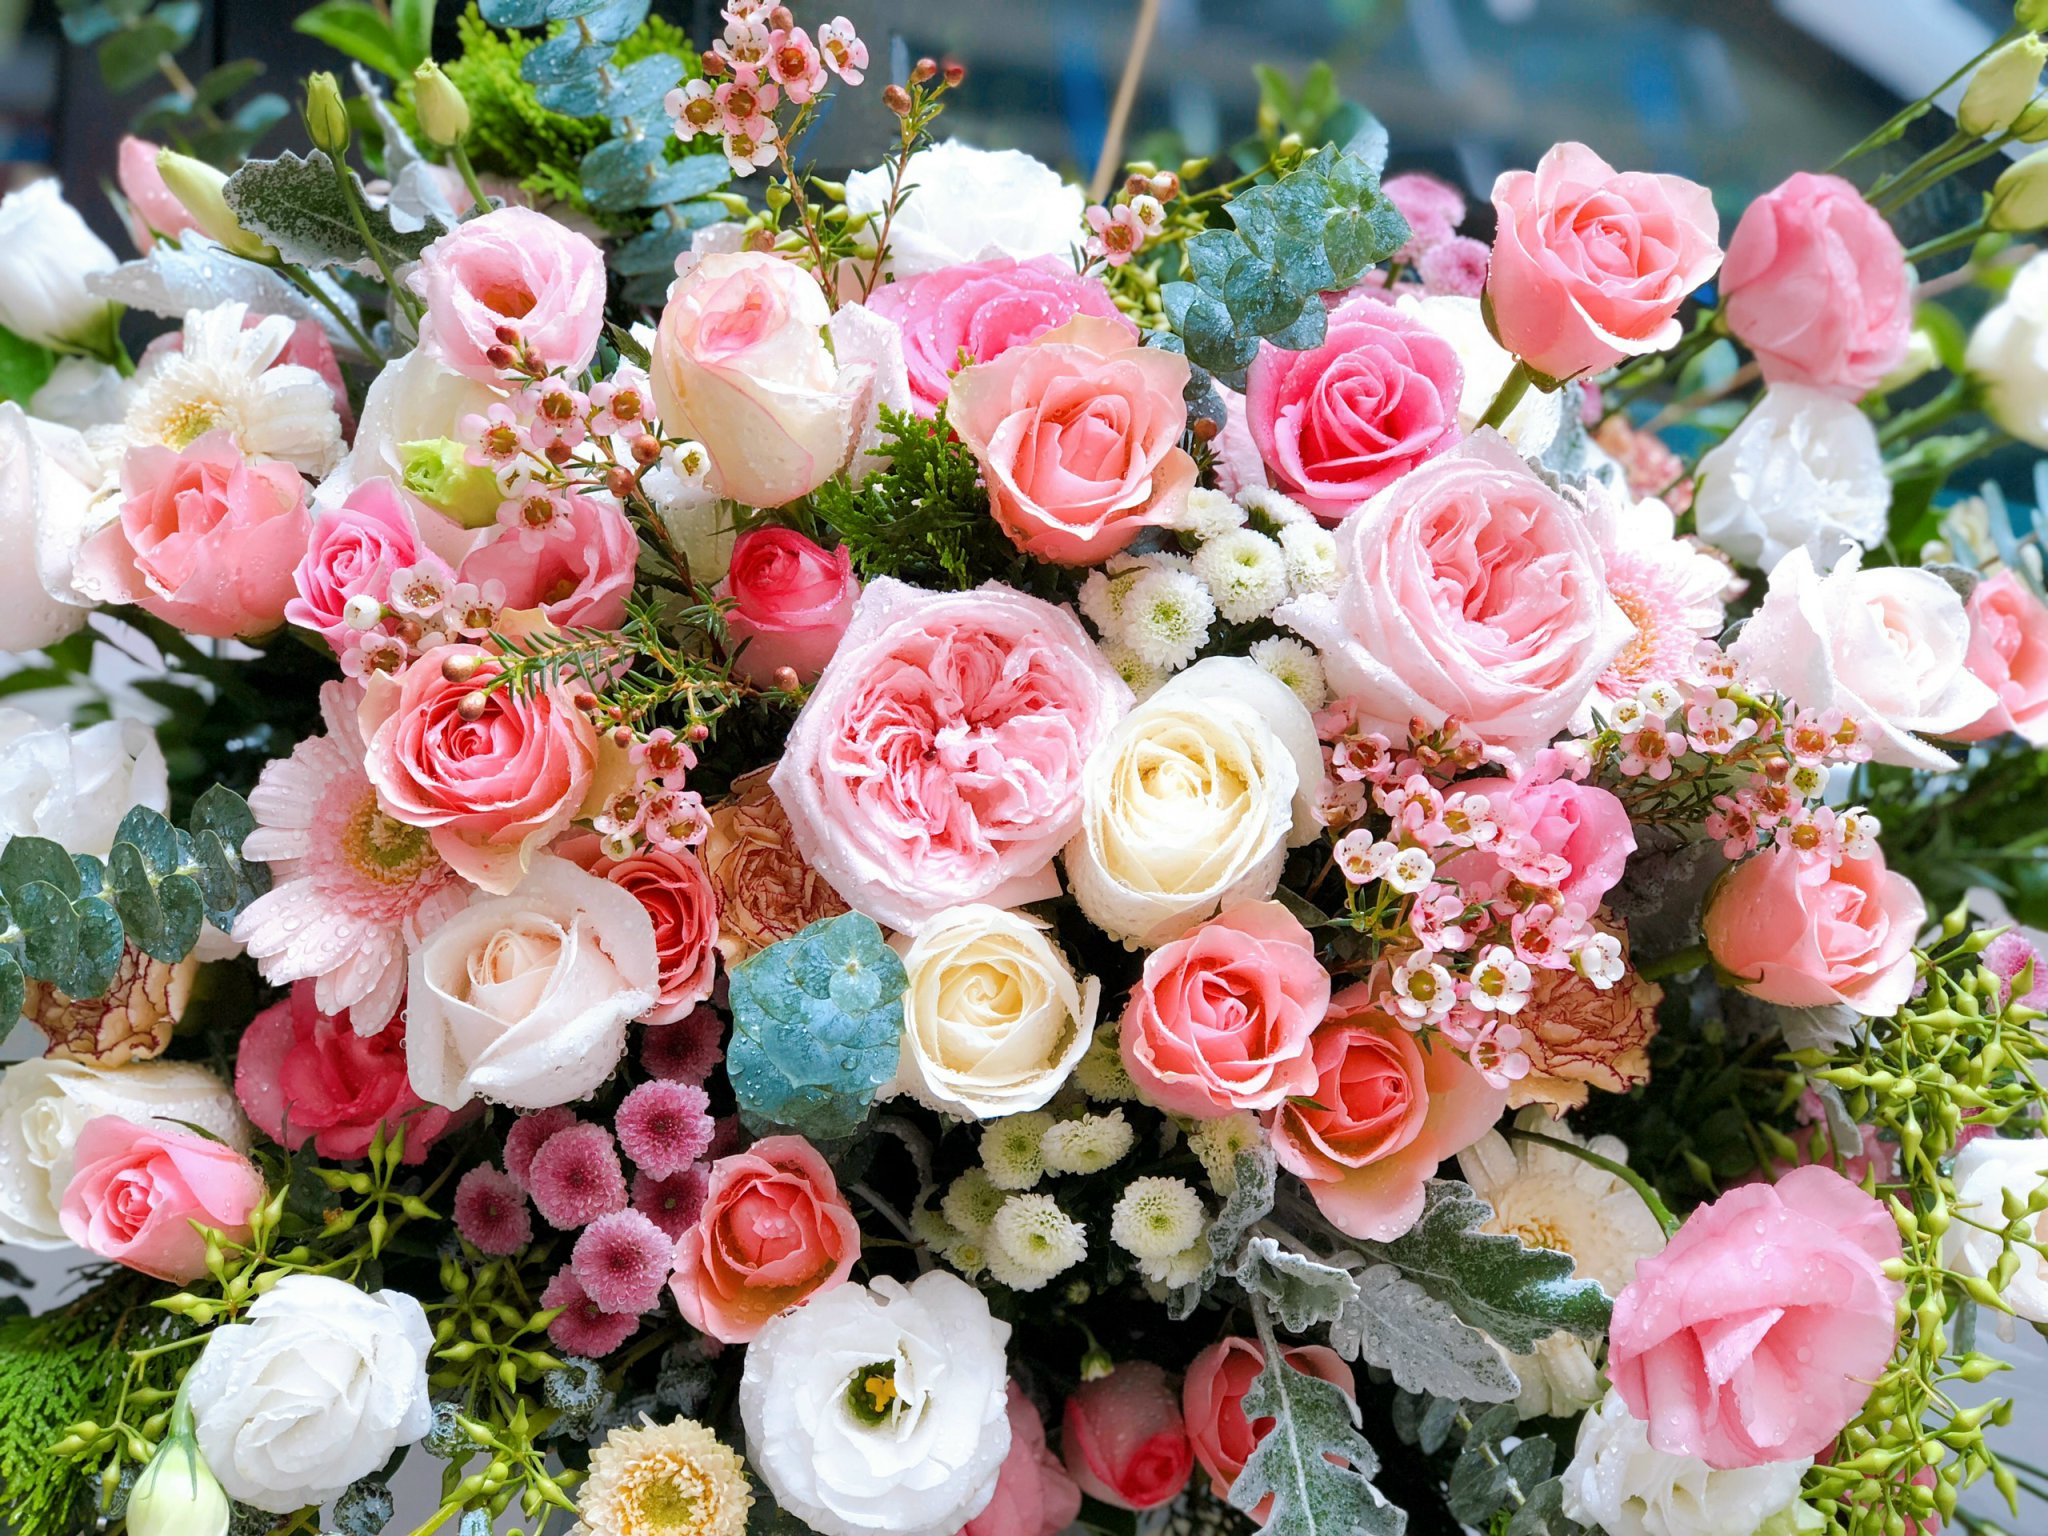 Sinh nhật là ngày đặc biệt và đáng nhớ trong cuộc đời mỗi người. Hãy tạo nên bất ngờ và hạnh phúc cho người nhận qua một lẵng hoa chúc mừng sinh nhật thật độc đáo và sáng tạo. Hãy nhấp vào hình ảnh để khám phá bộ sưu tập bó hoa đẹp nhất nhé!